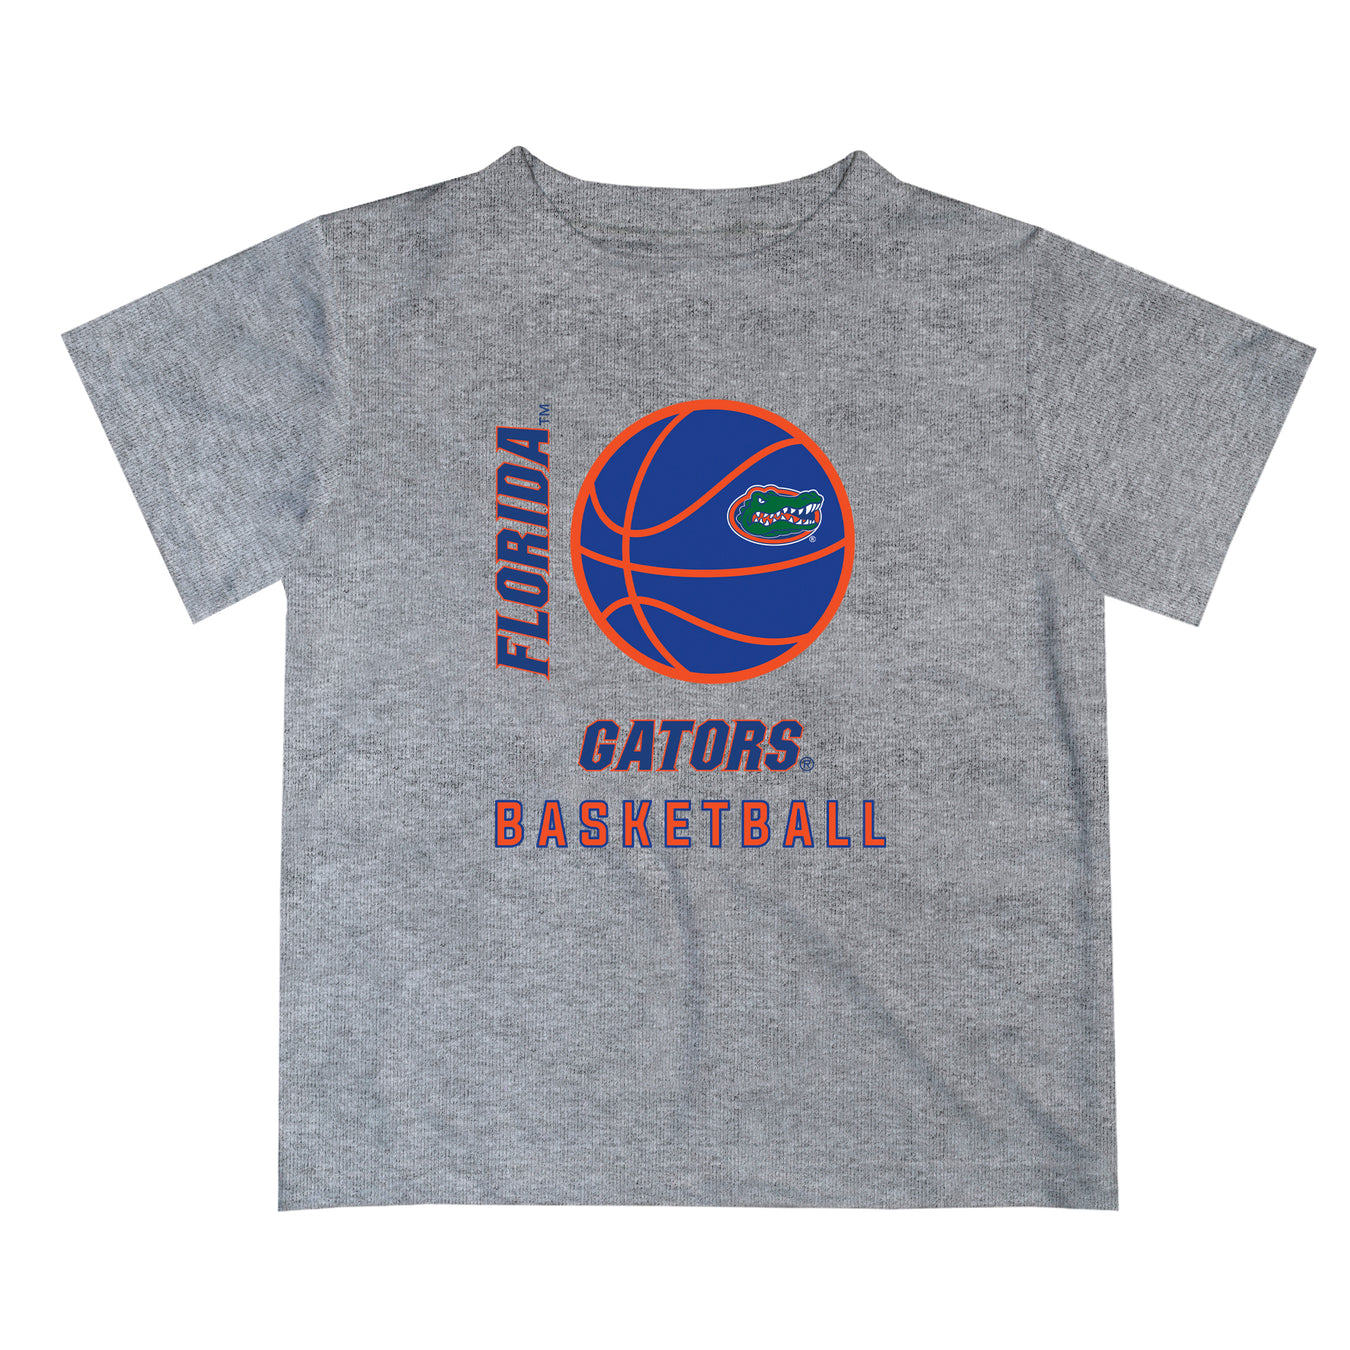 Basketball T-shirts